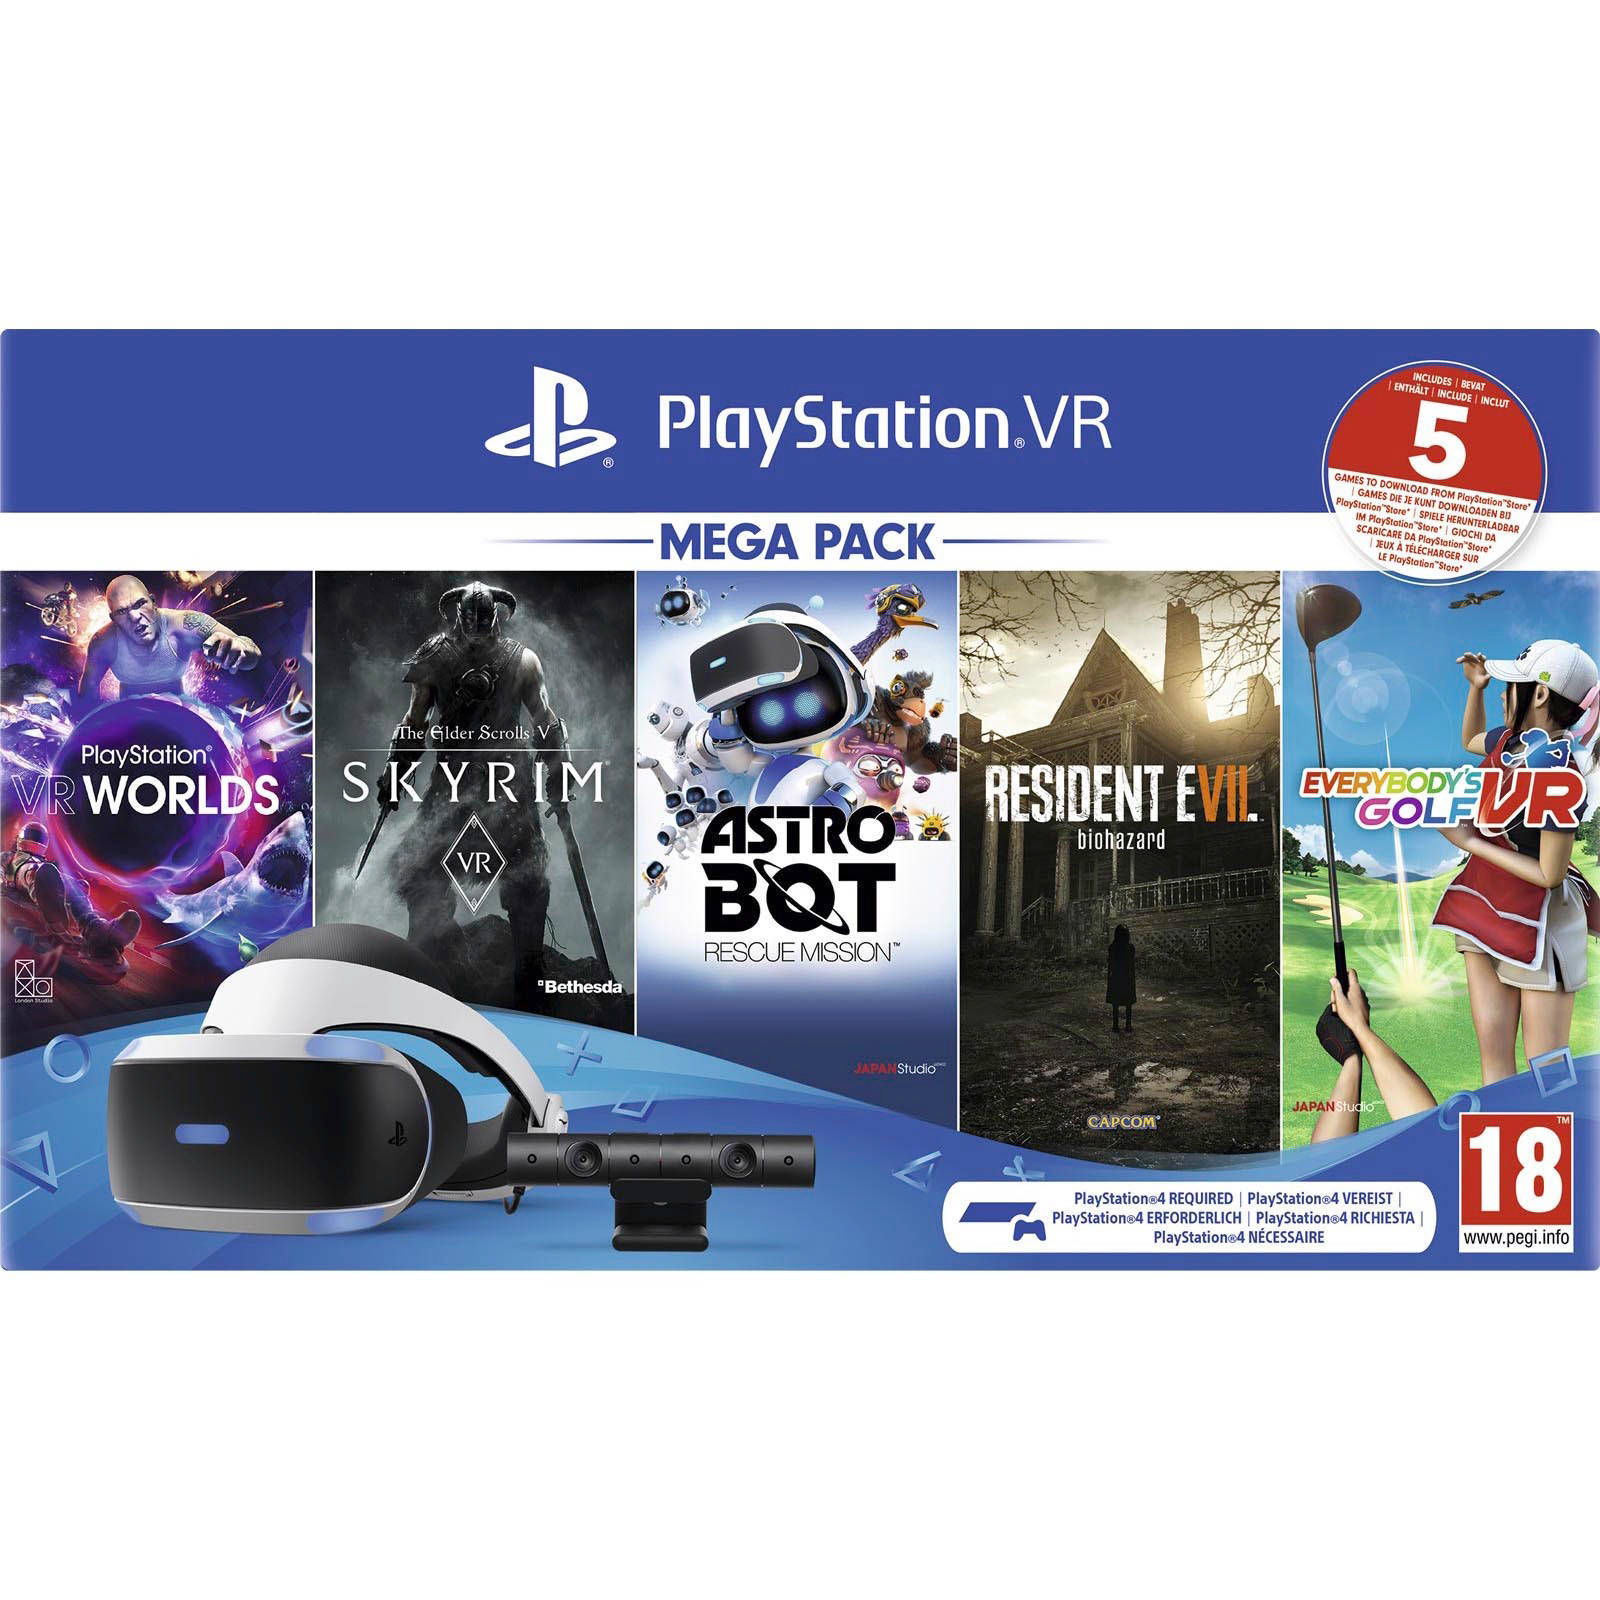 PlayStation VR MEGA PACK - urtrs.ba